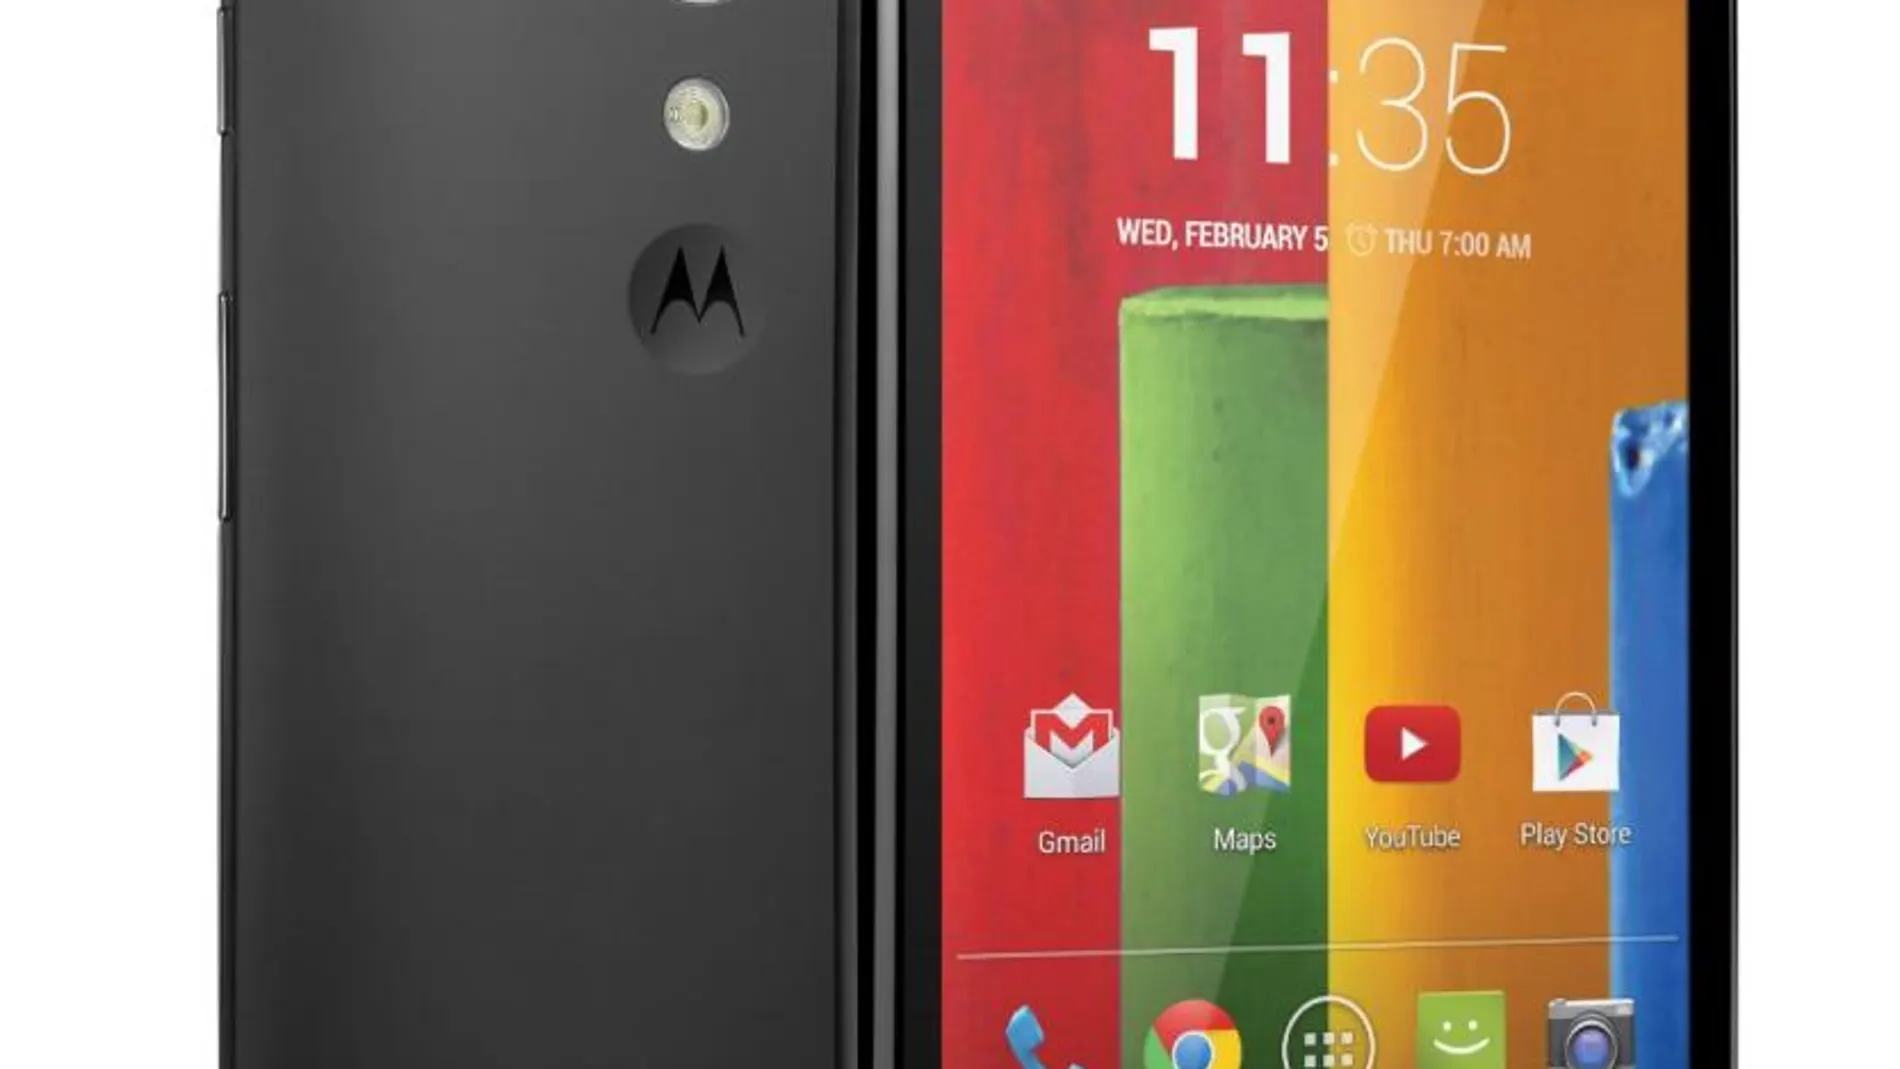 El Motorola Moto G ha sido el teléfono más vendido en Amazon el pasado año